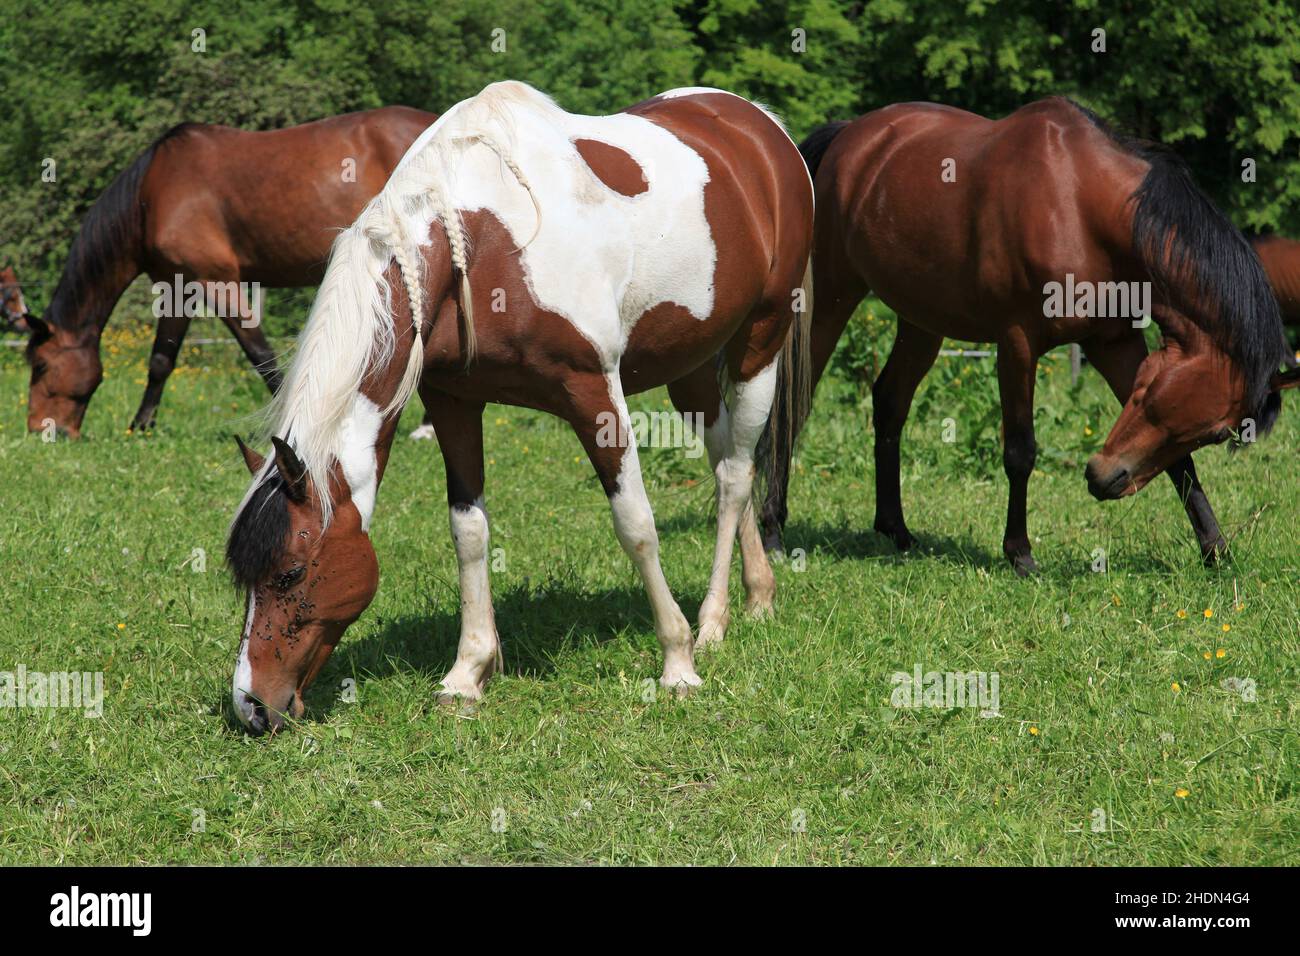 horses, horse Stock Photo